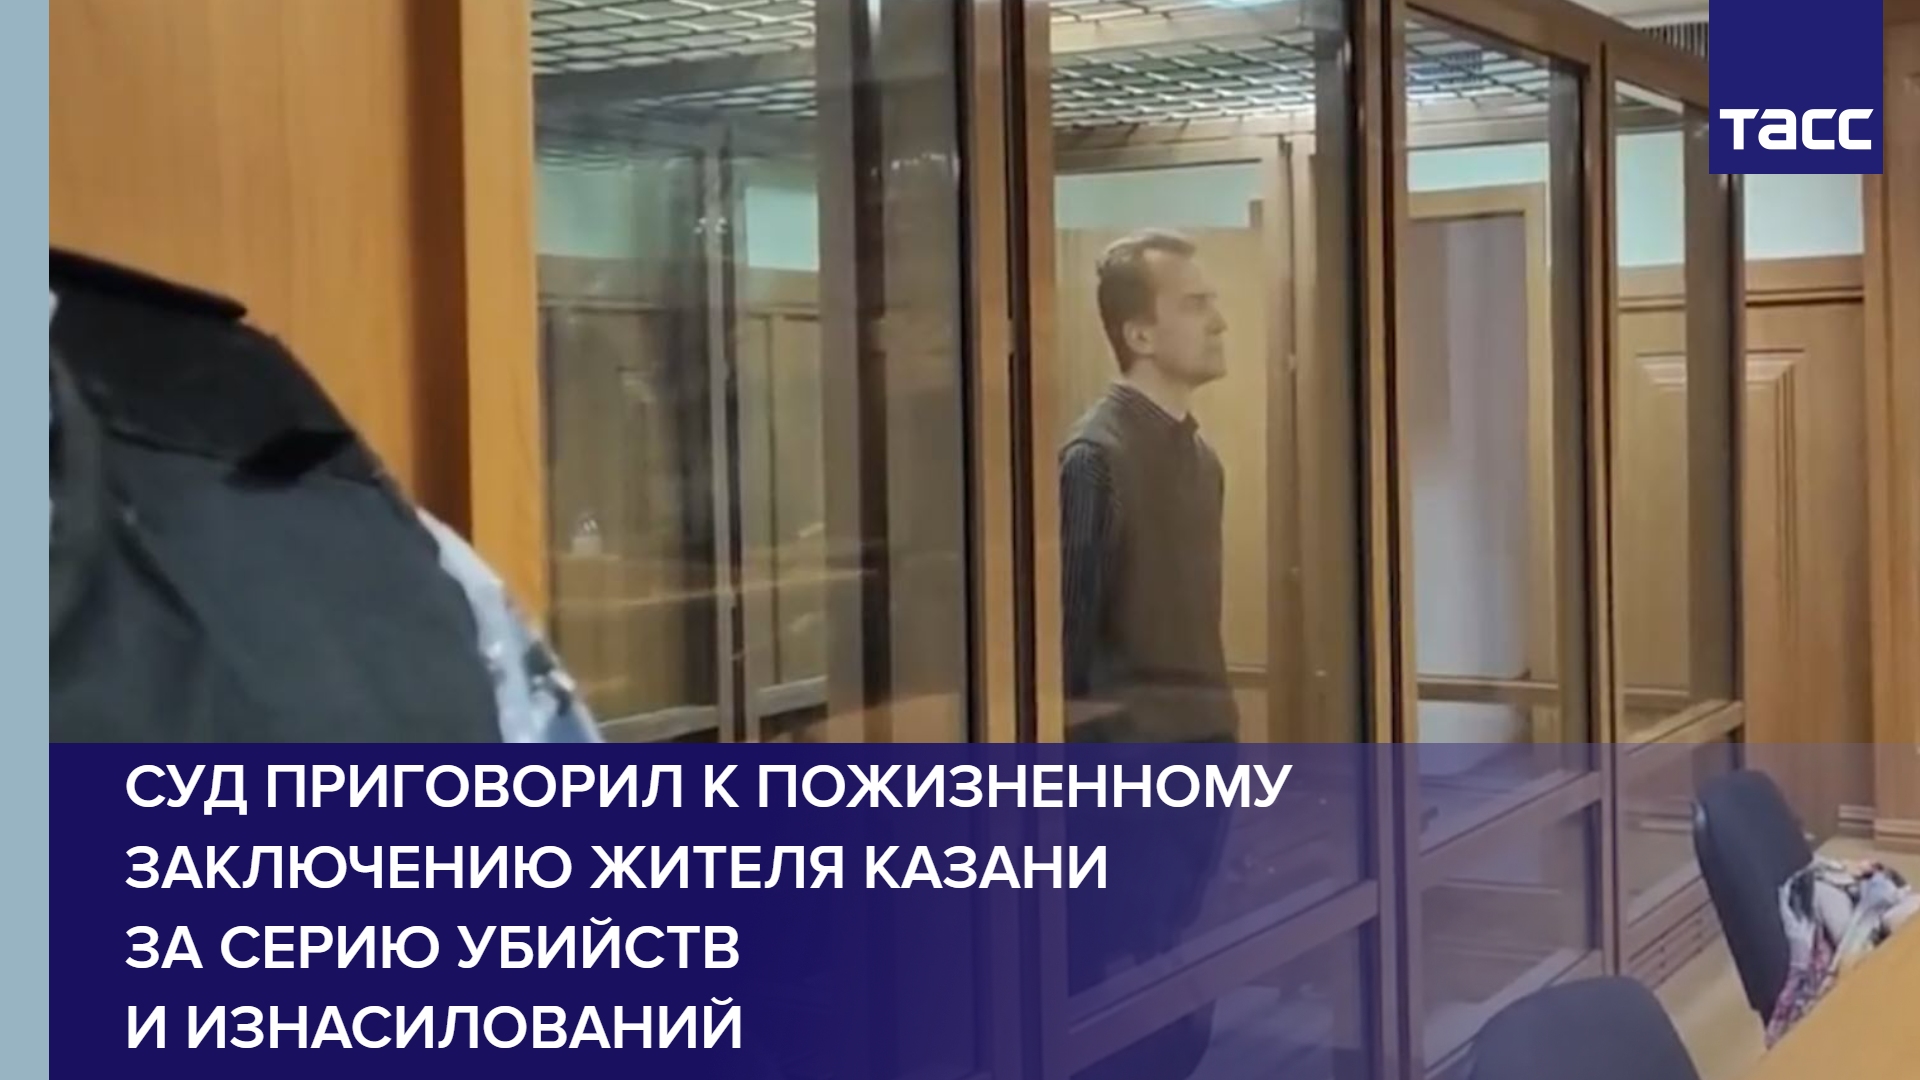 Суд приговорил к пожизненному заключению жителя Казани за серию убийств и изнасилований #shorts